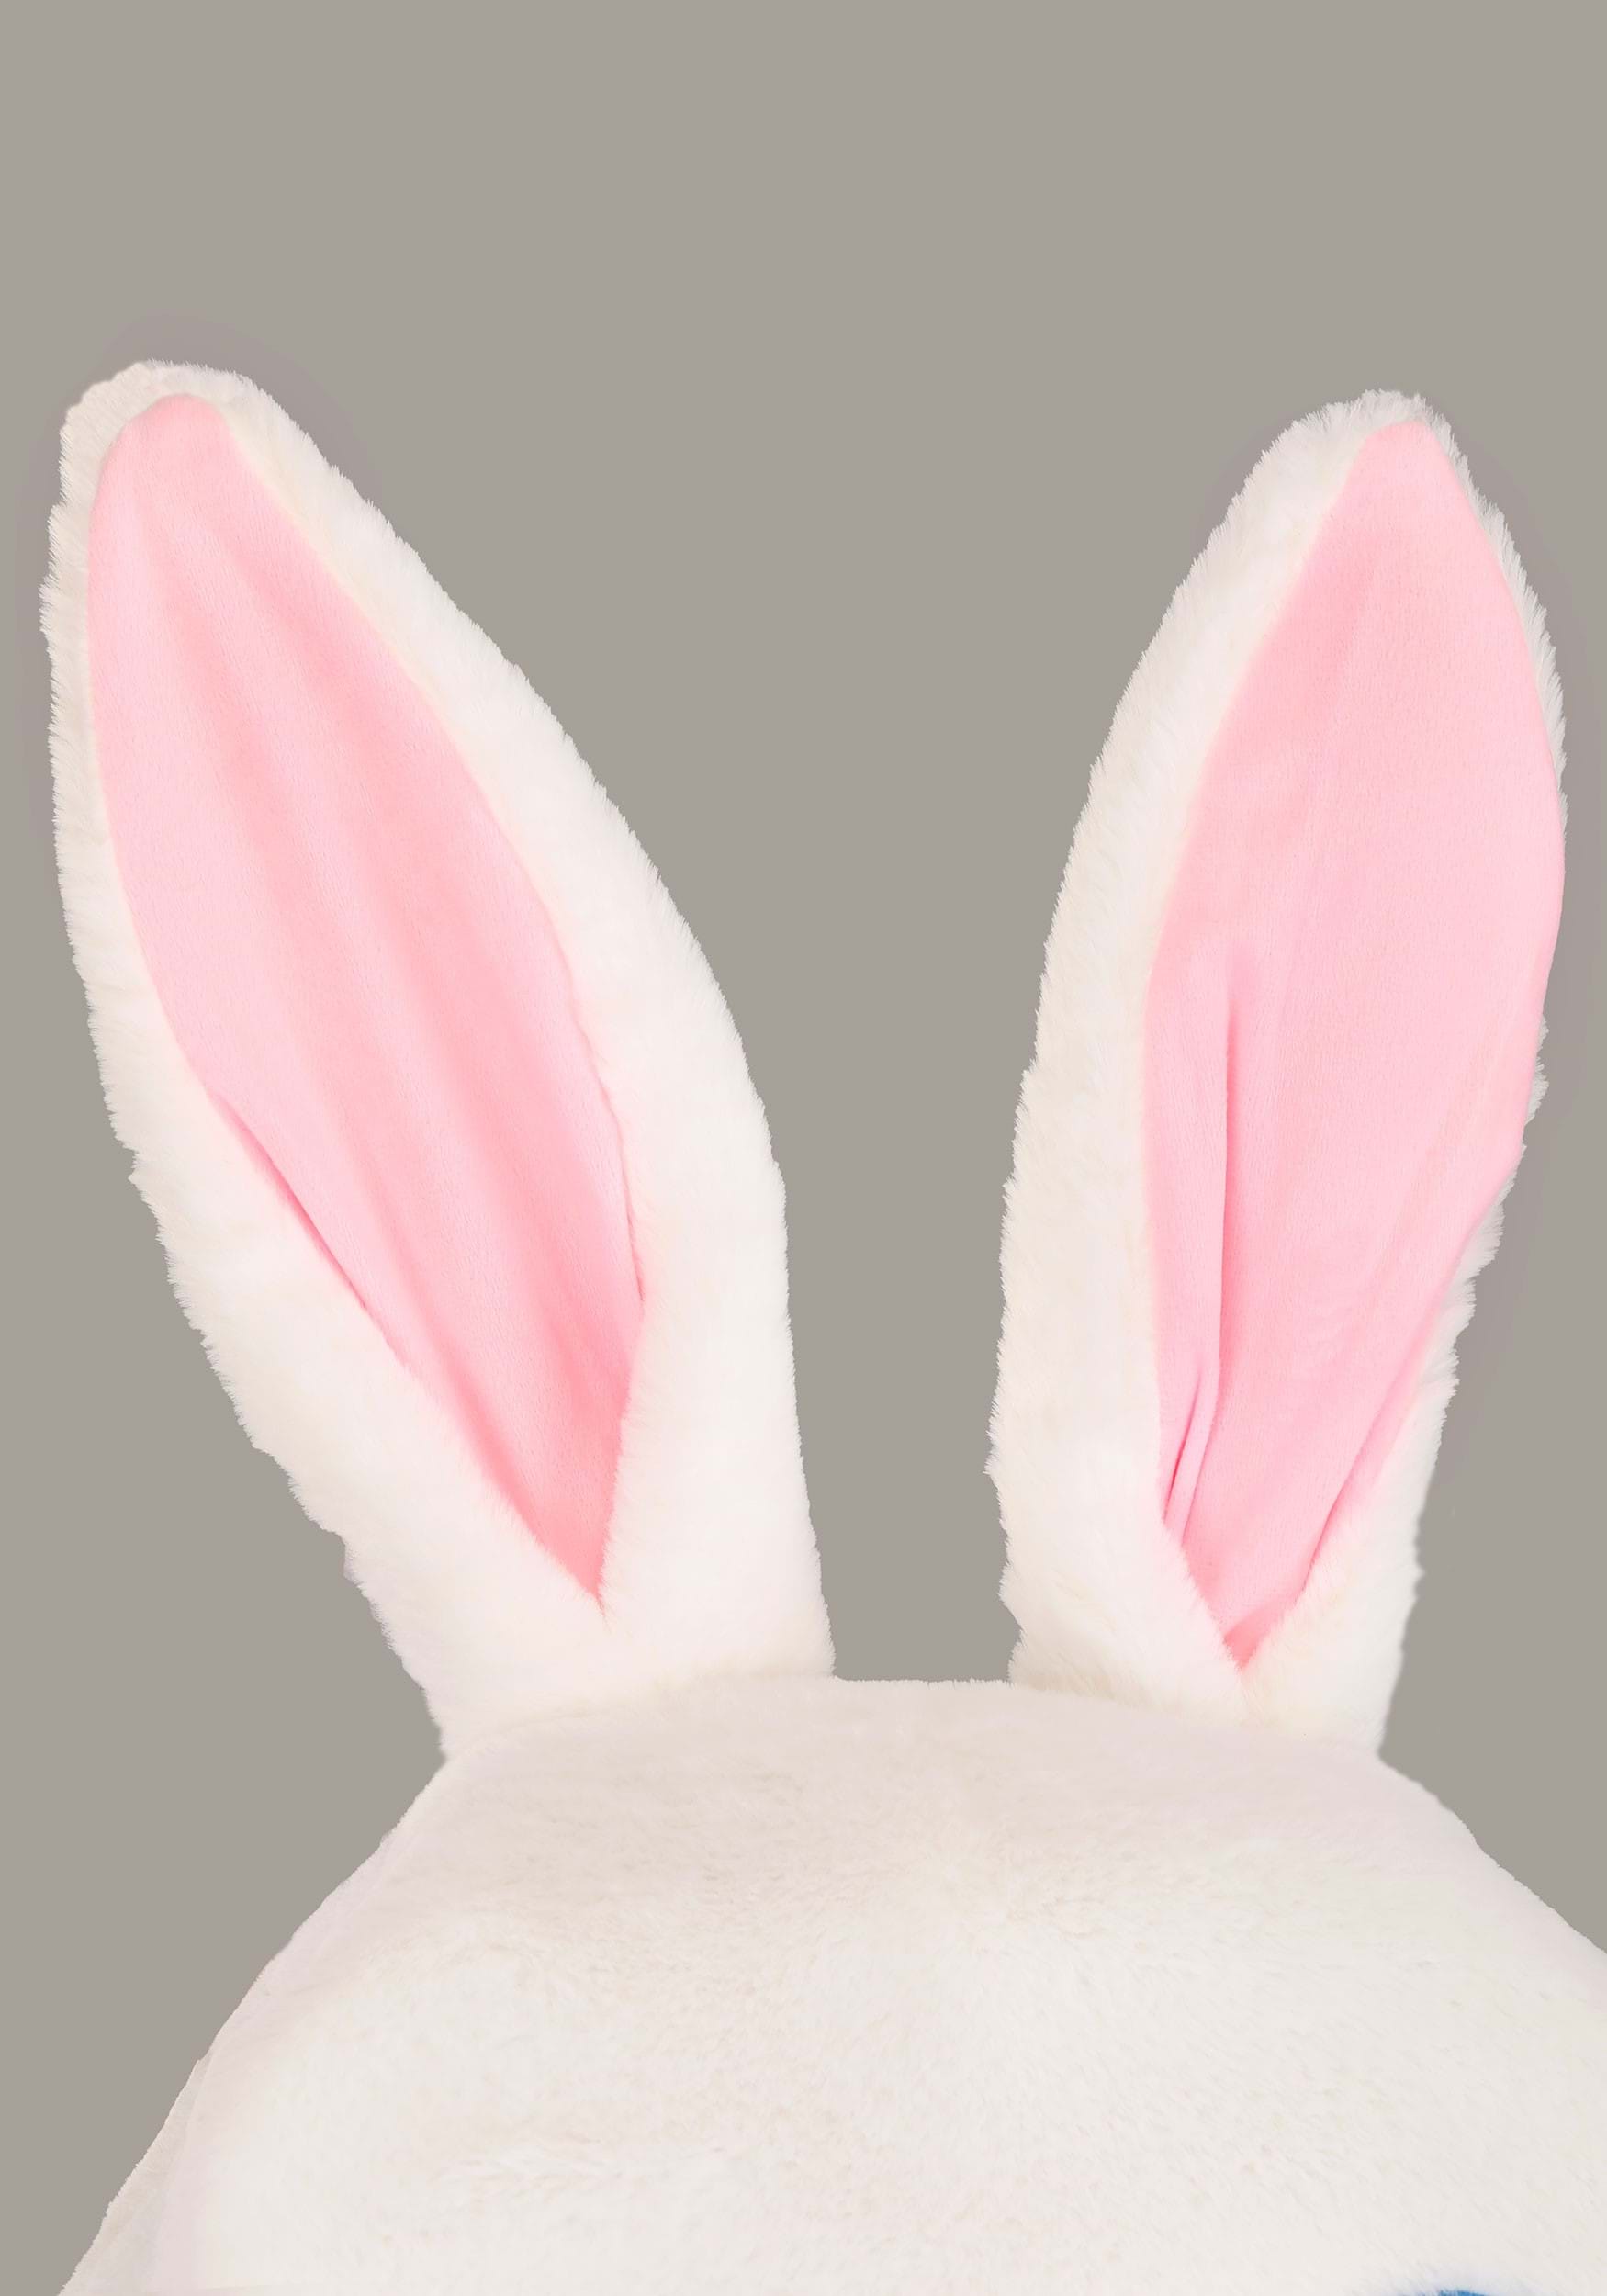 Bunny Ears - Mascots